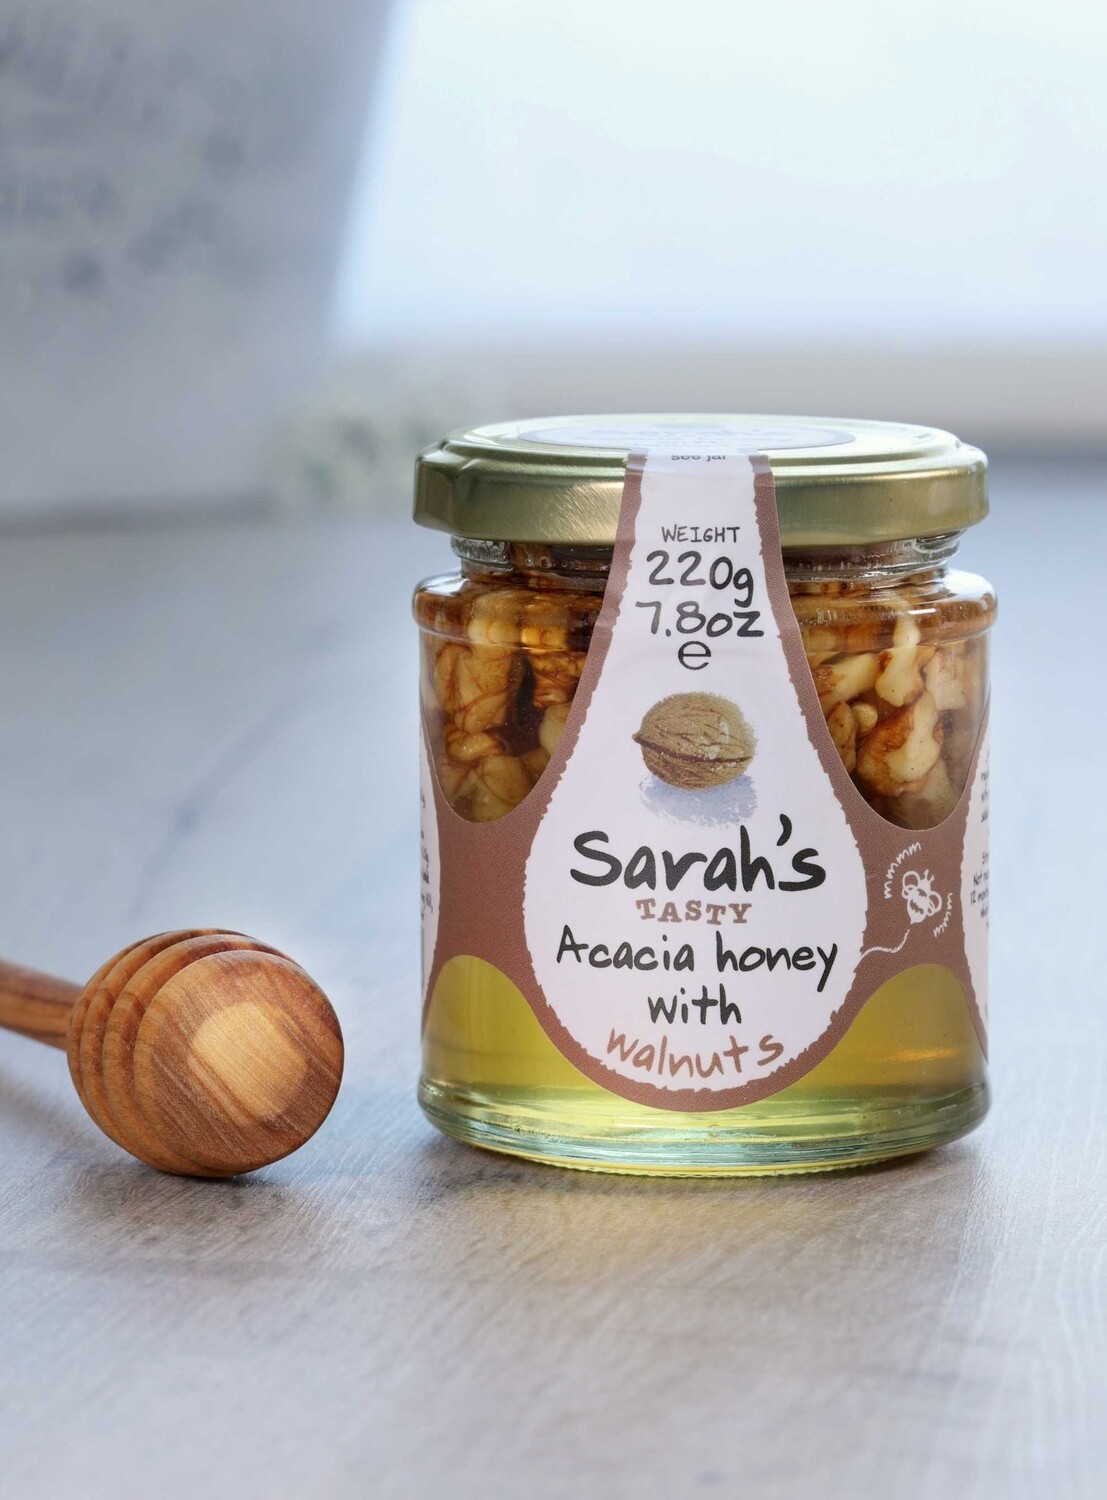 Sarah's Tasty Acacia Honey with Walnuts